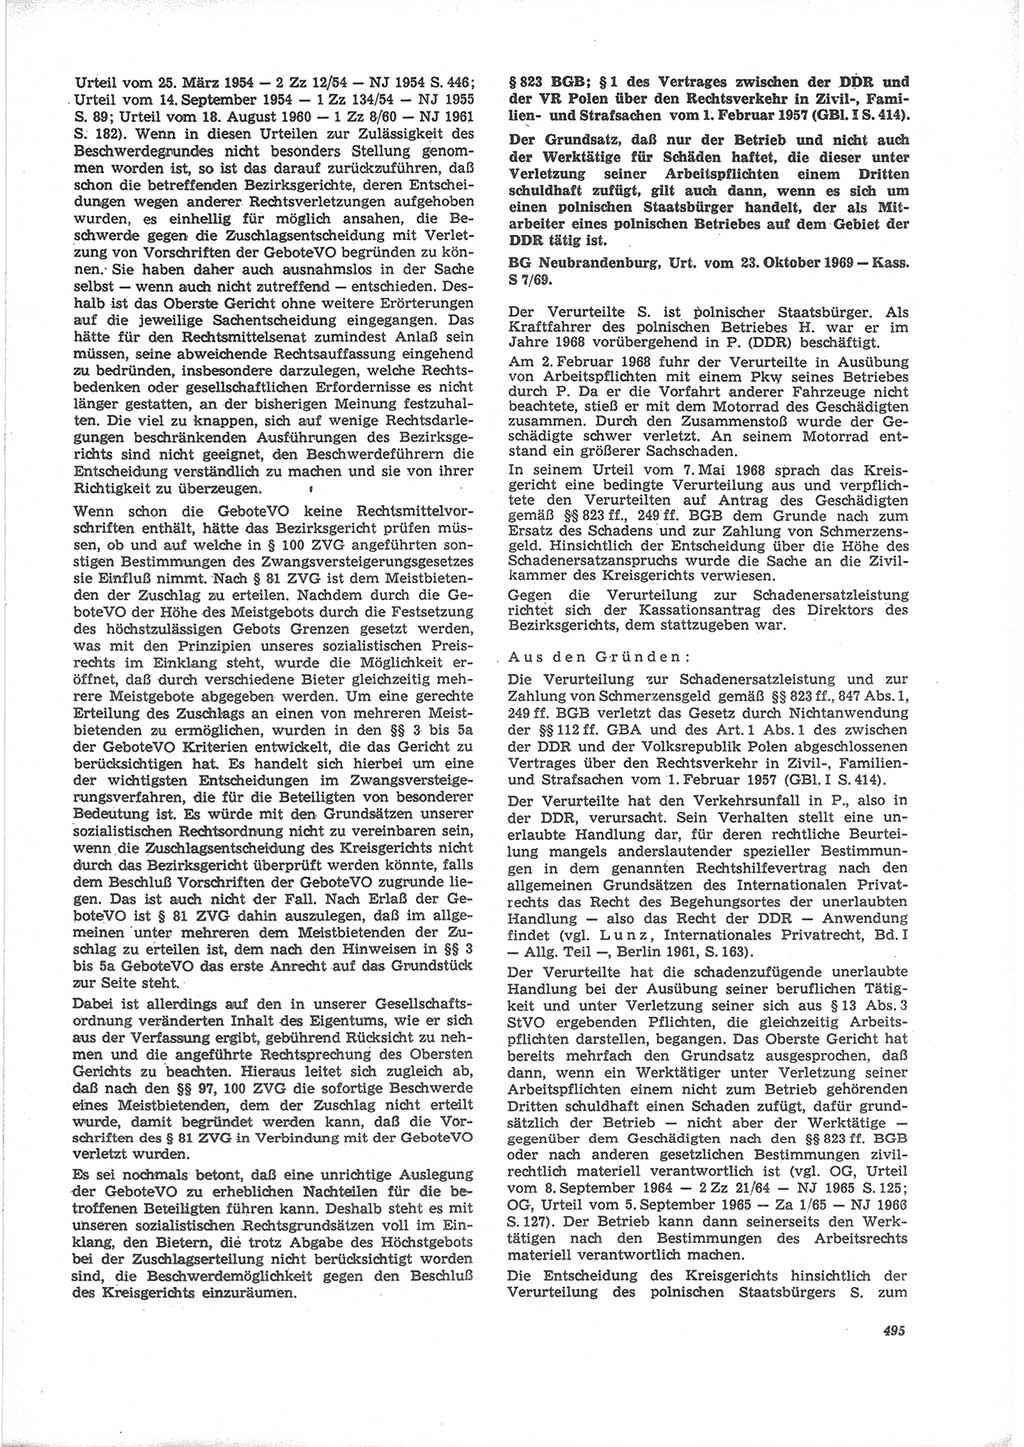 Neue Justiz (NJ), Zeitschrift für Recht und Rechtswissenschaft [Deutsche Demokratische Republik (DDR)], 24. Jahrgang 1970, Seite 495 (NJ DDR 1970, S. 495)